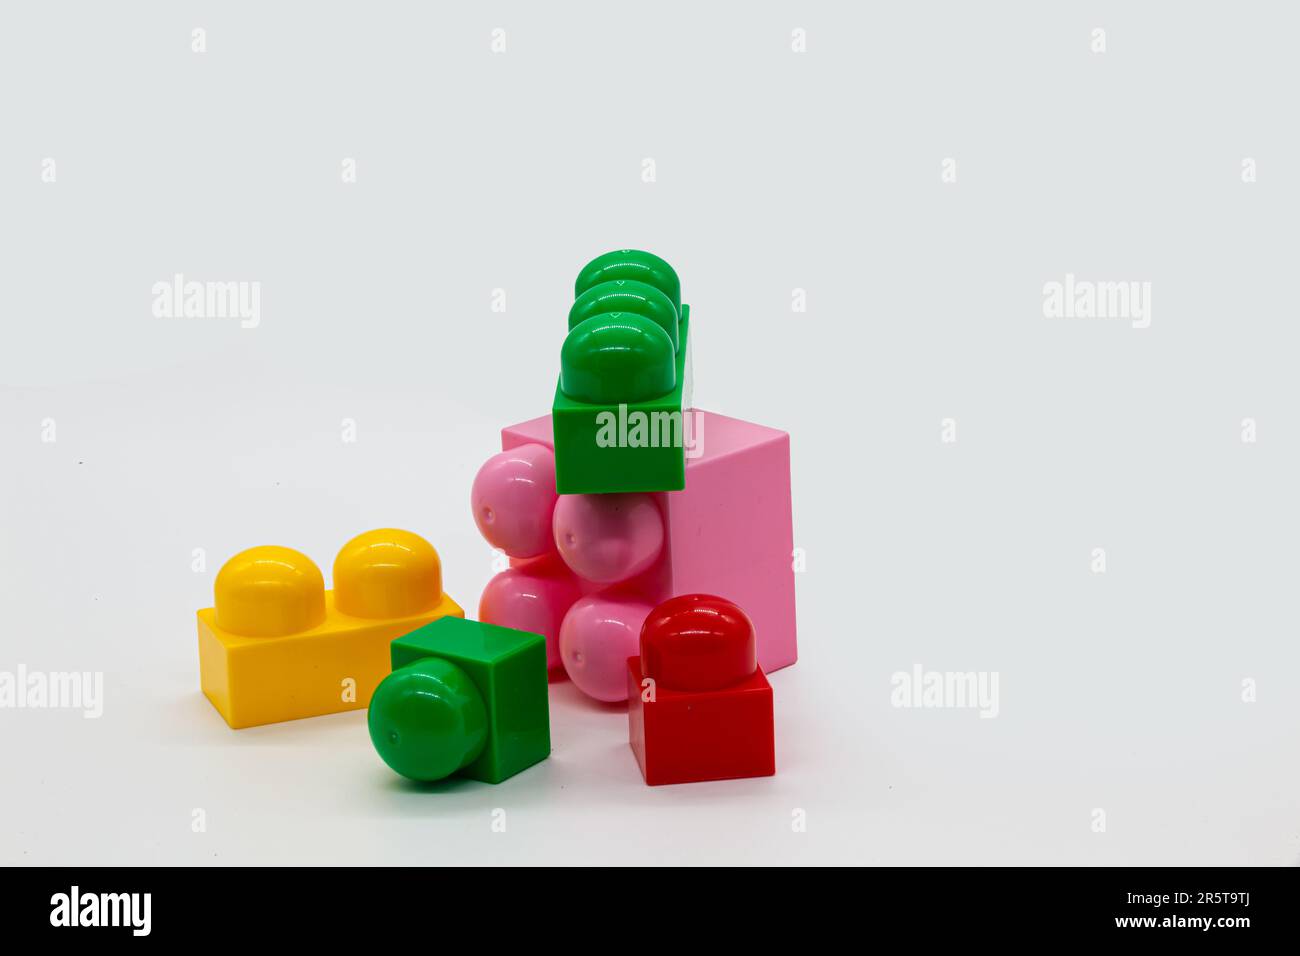 Lego rosa immagini e fotografie stock ad alta risoluzione - Alamy